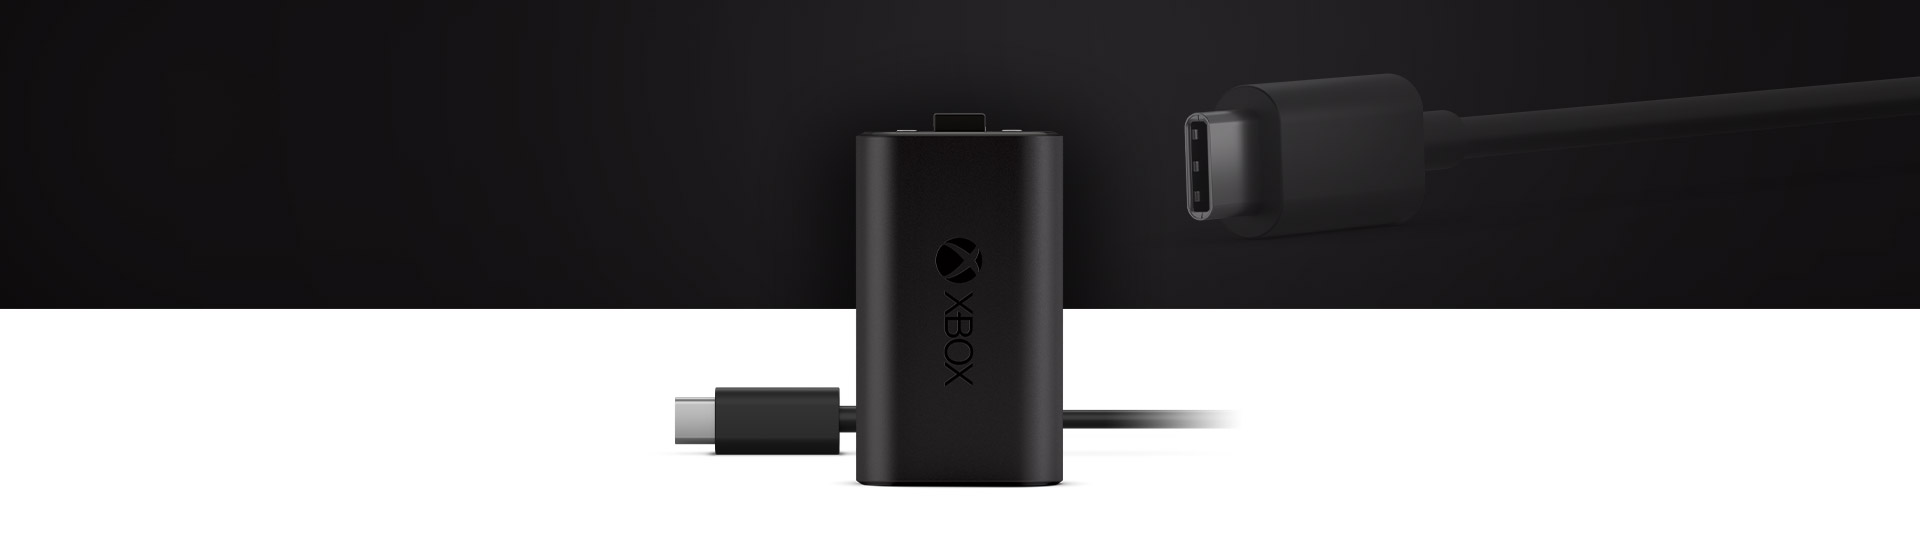 Batería recargable Xbox + cable USB-C® | Xbox